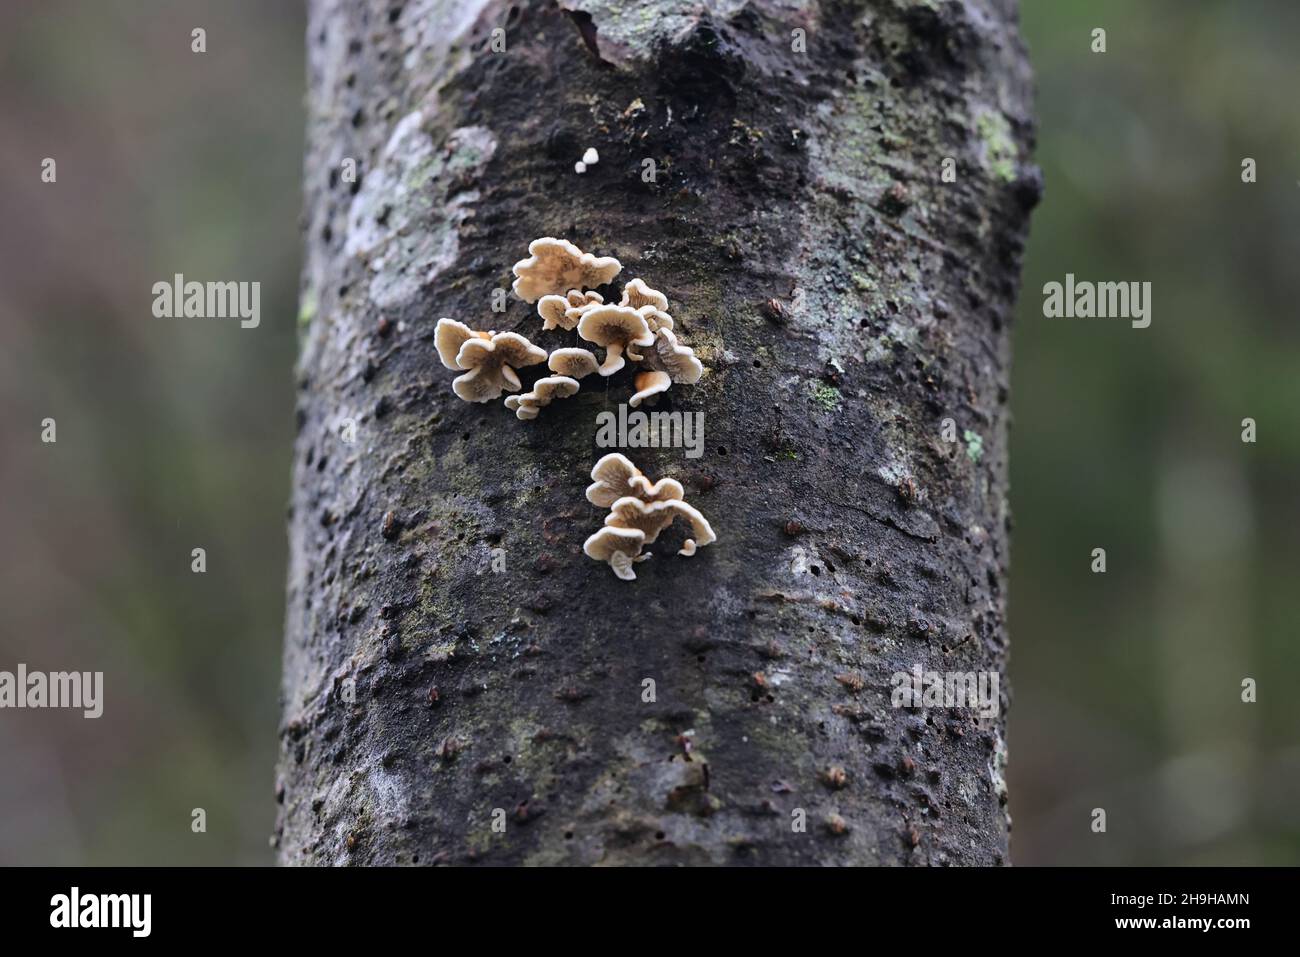 Plicatura crispa, communément connu sous le nom de branchigaux criblé, champignon sauvage de Finlande Banque D'Images